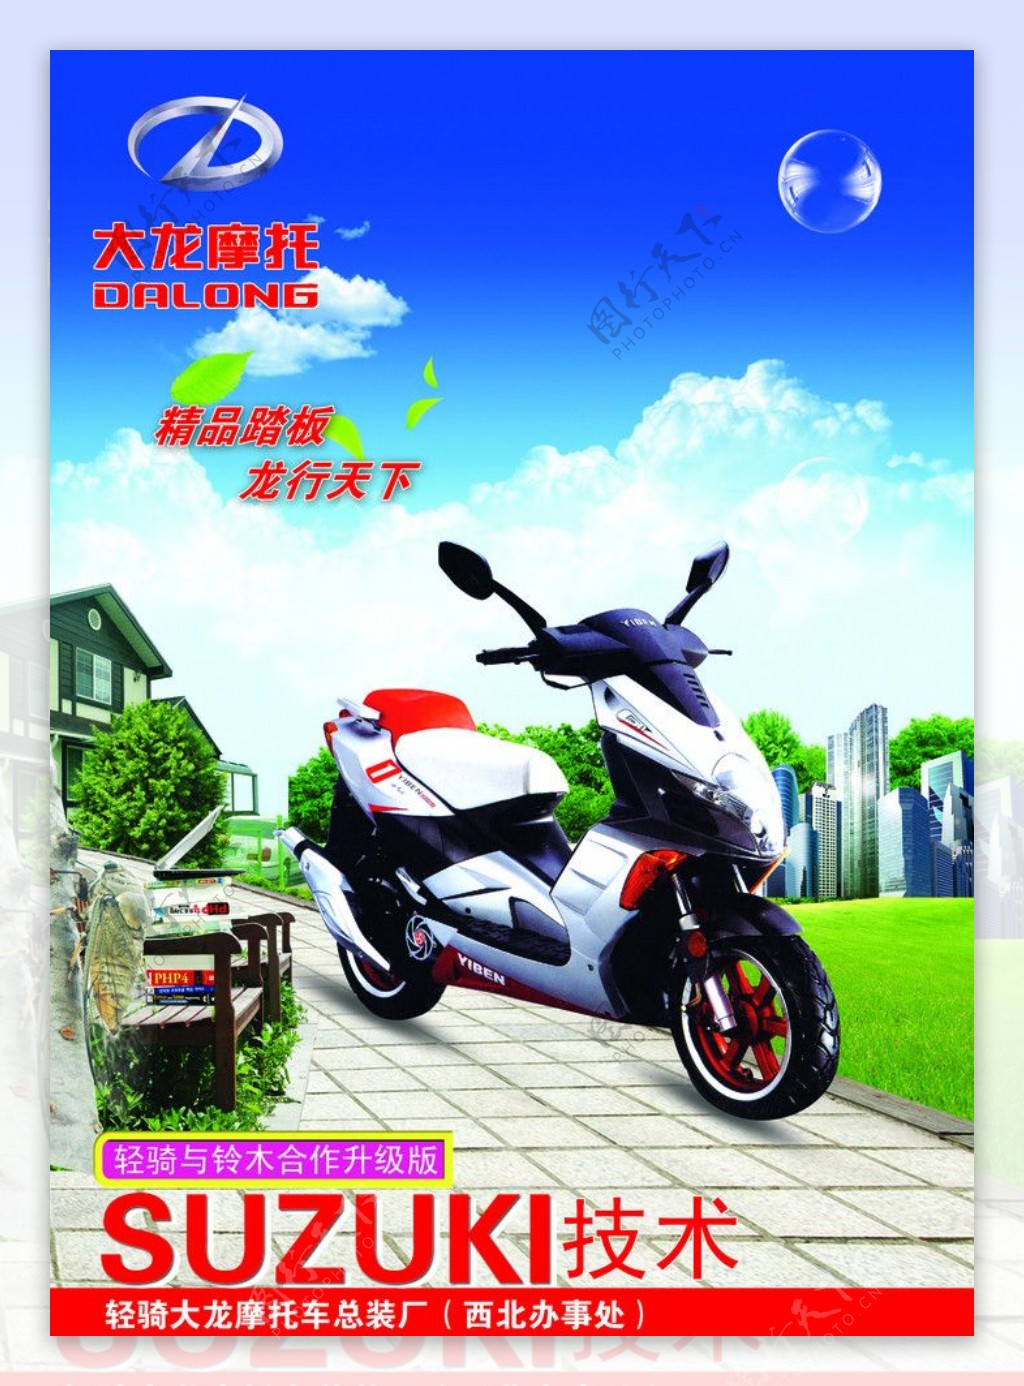 大龙摩托车广告图片